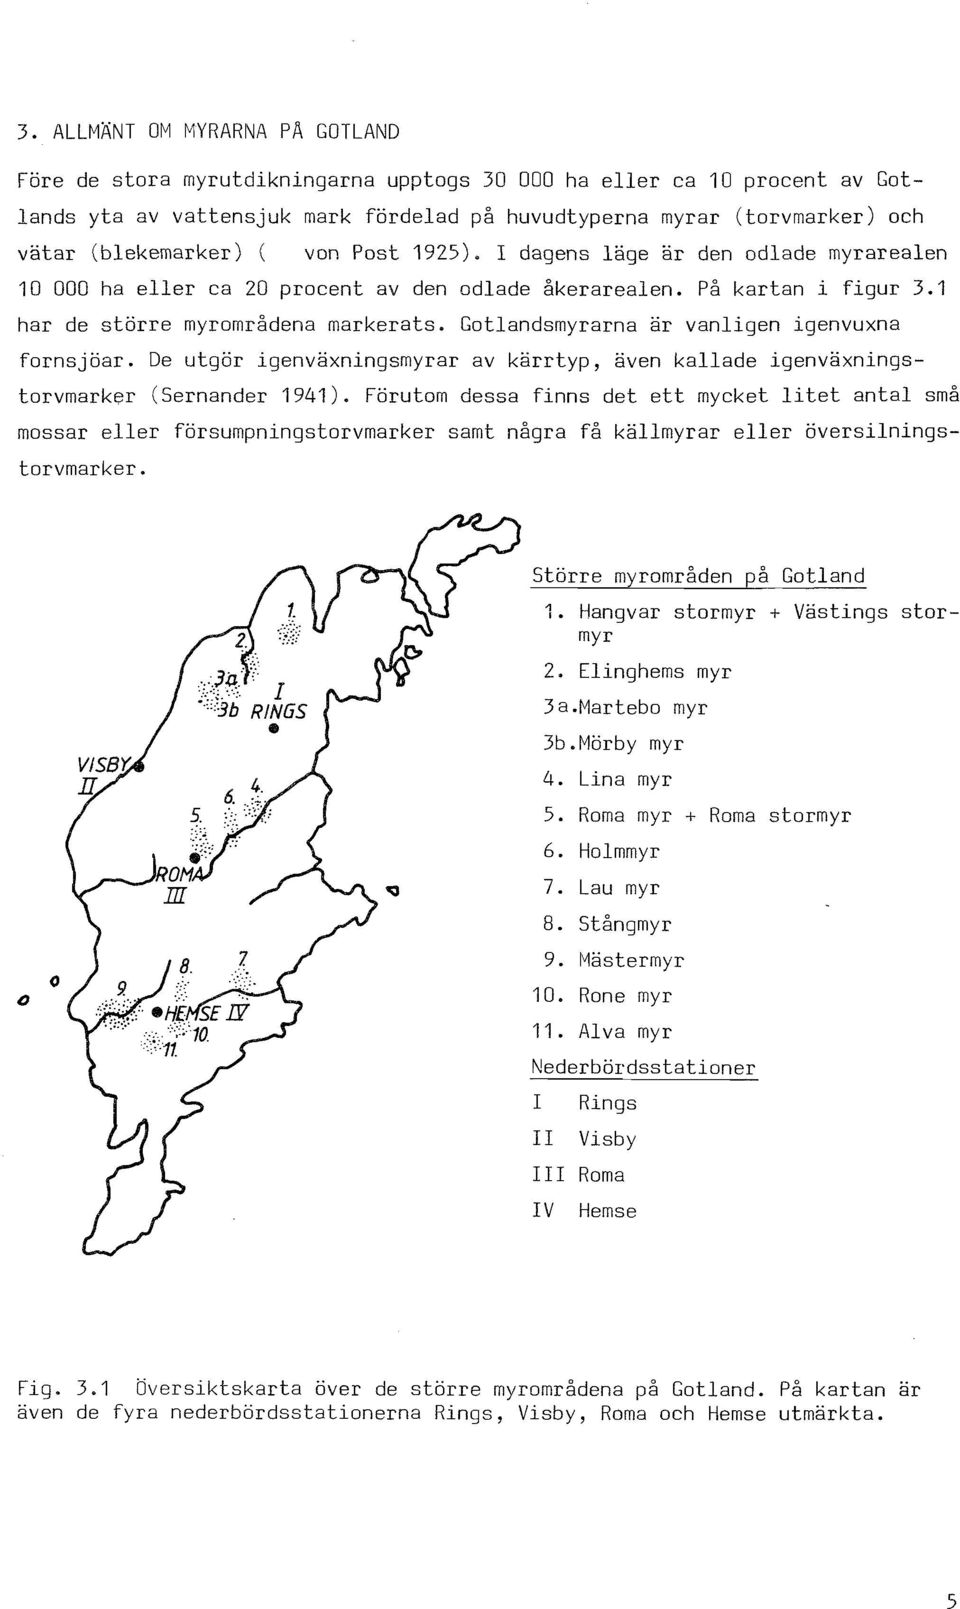 Gotlandsmyrarna är vanligen igenvuxna fornsjöar. De utgör igenväxningsmyrar av kärrtyp, även kallade igenväxningstorvmarker (Sernander 1941).